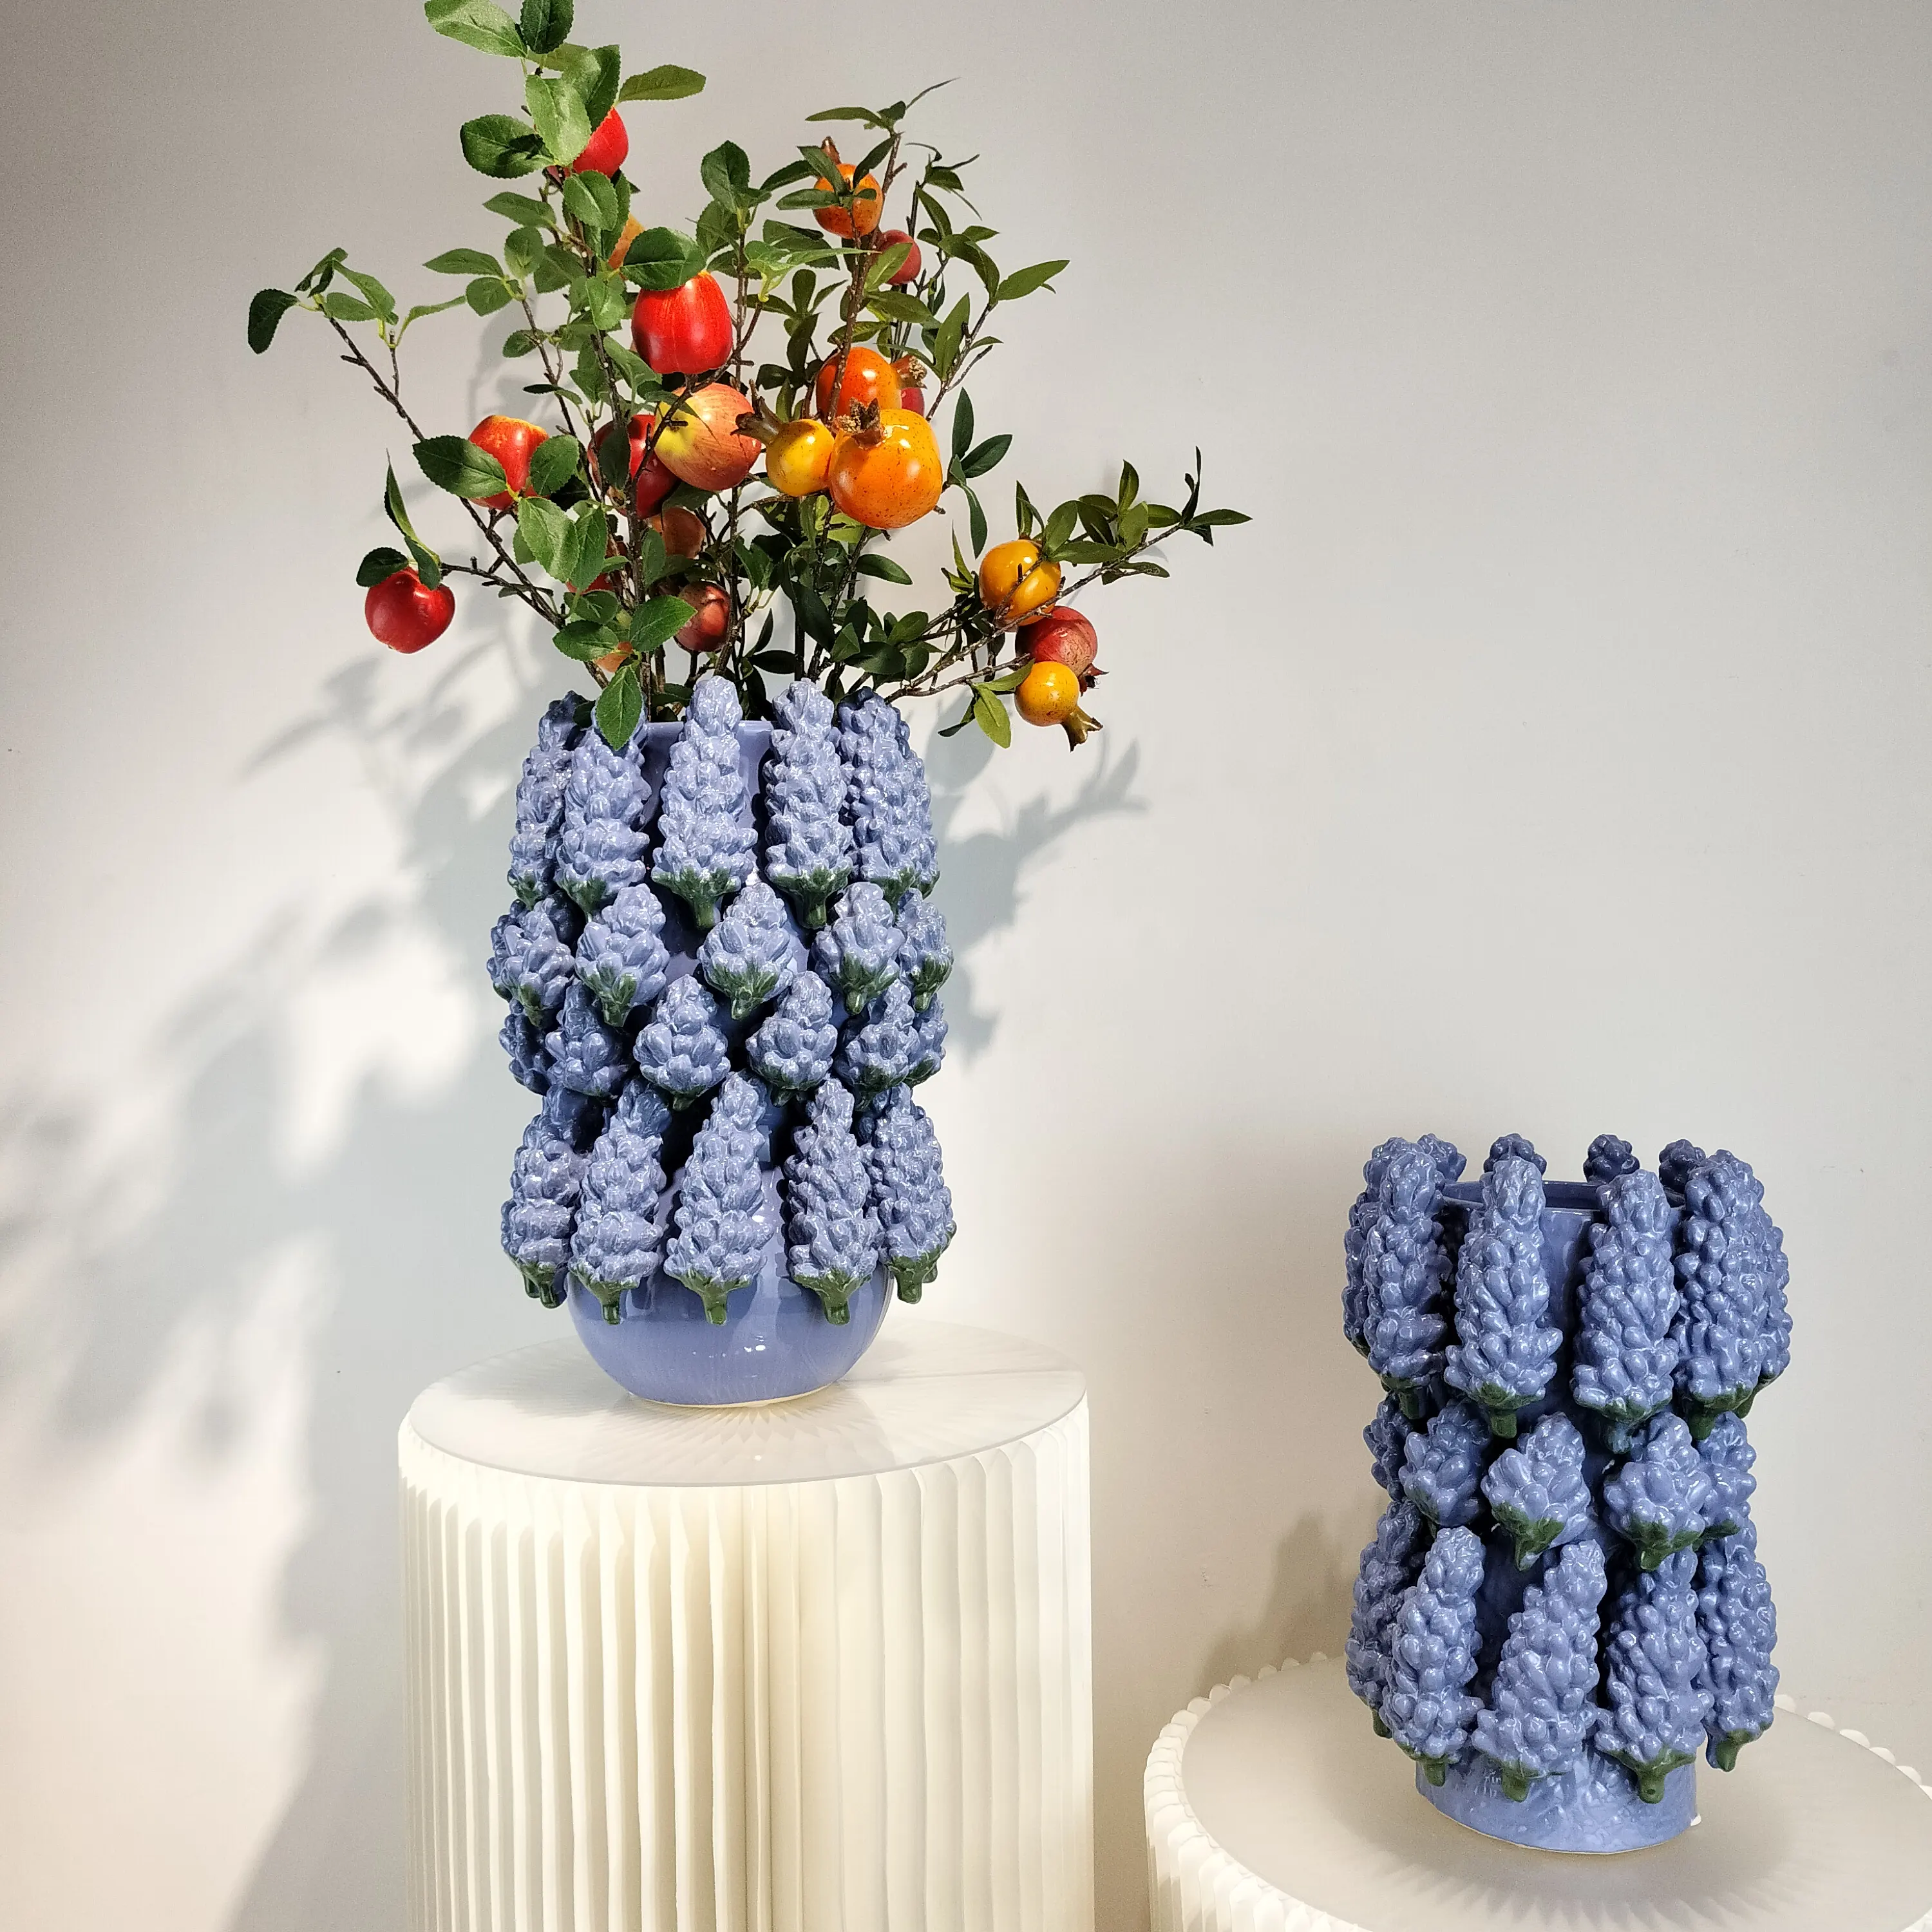 高級家庭用ヨーロッパスタイル手作りセラミック装飾ブドウ花瓶中国工場製造シンプルスタイル